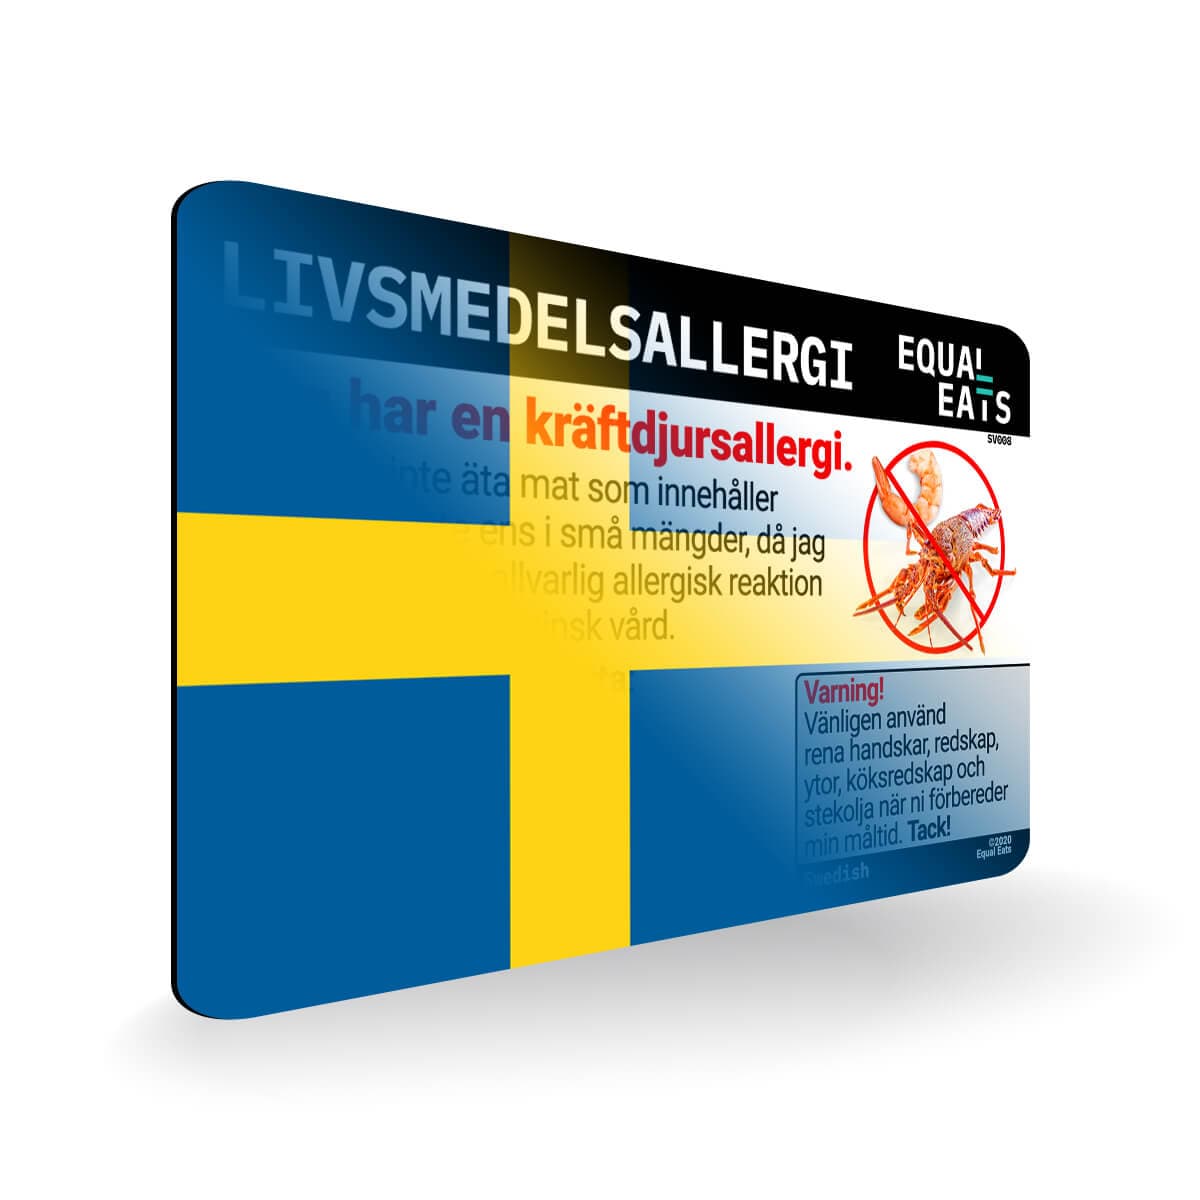 Crustacean Allergy in Swedish. Crustacean Allergy Card for Sweden